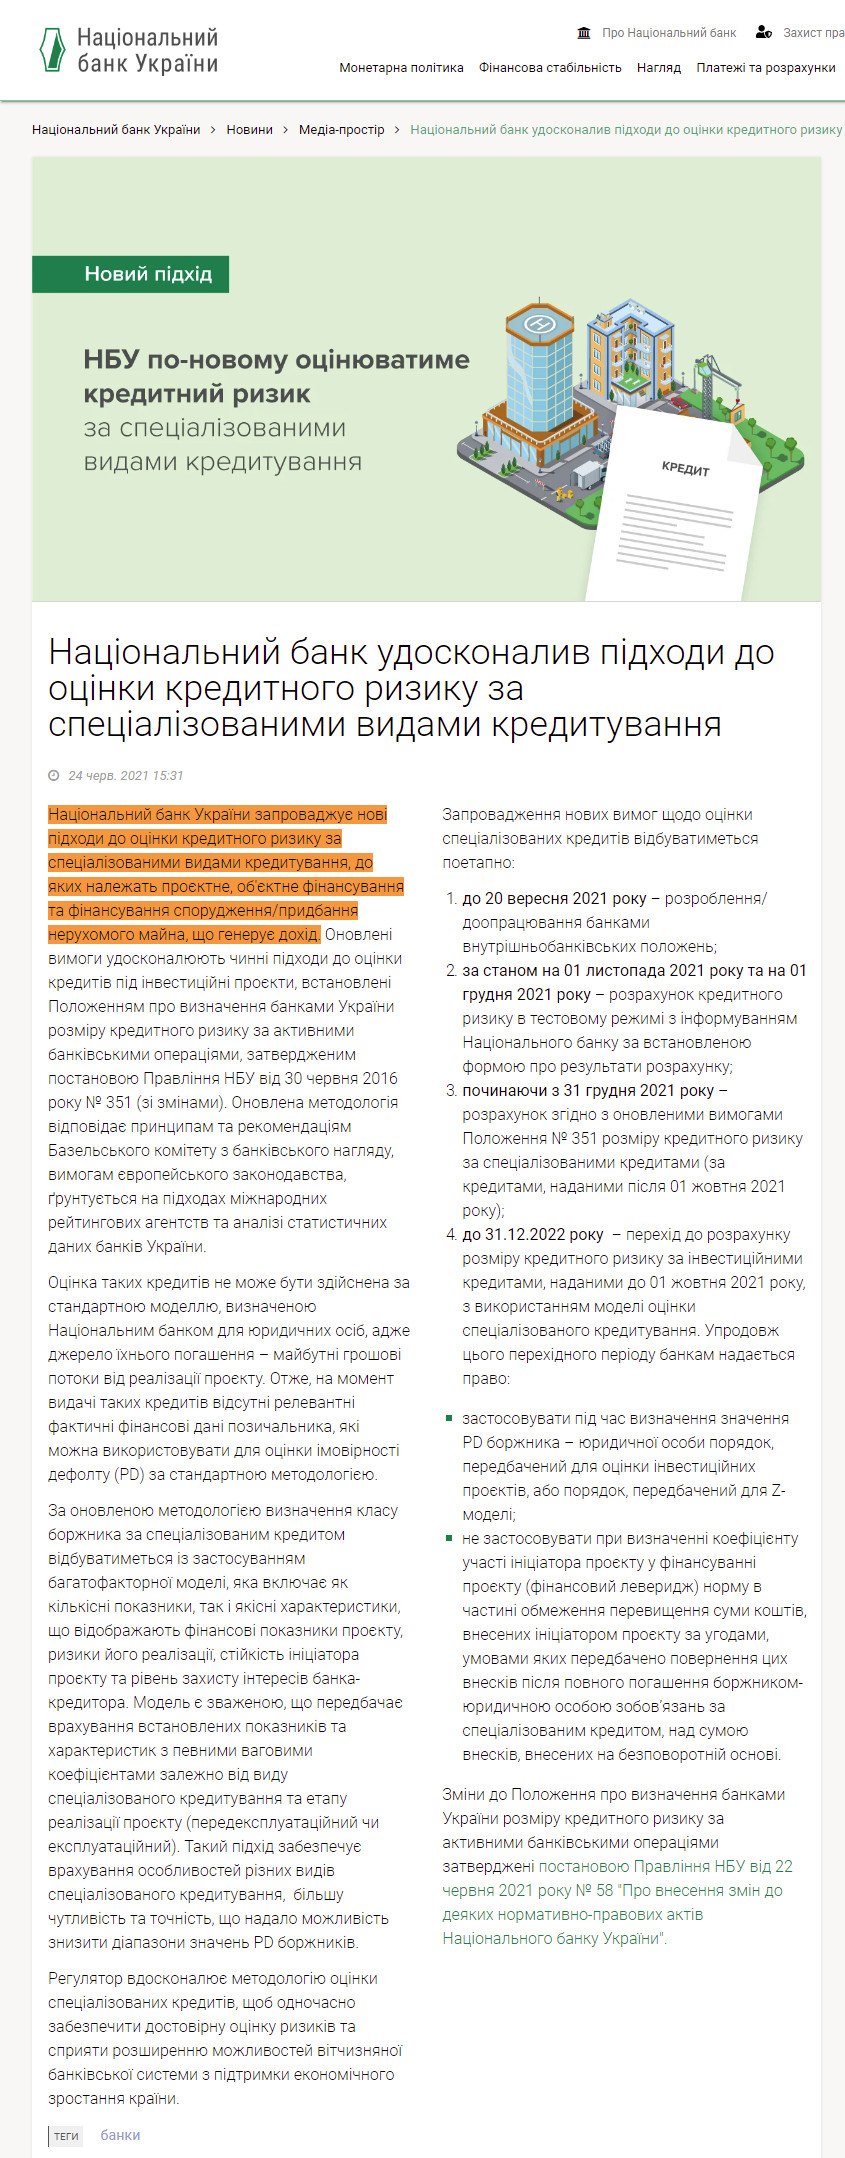 https://bank.gov.ua/ua/news/all/natsionalniy-bank-udoskonaliv-pidhodi-do-otsinki-kreditnogo-riziku-za-spetsializovanimi-vidami-kredituvannya